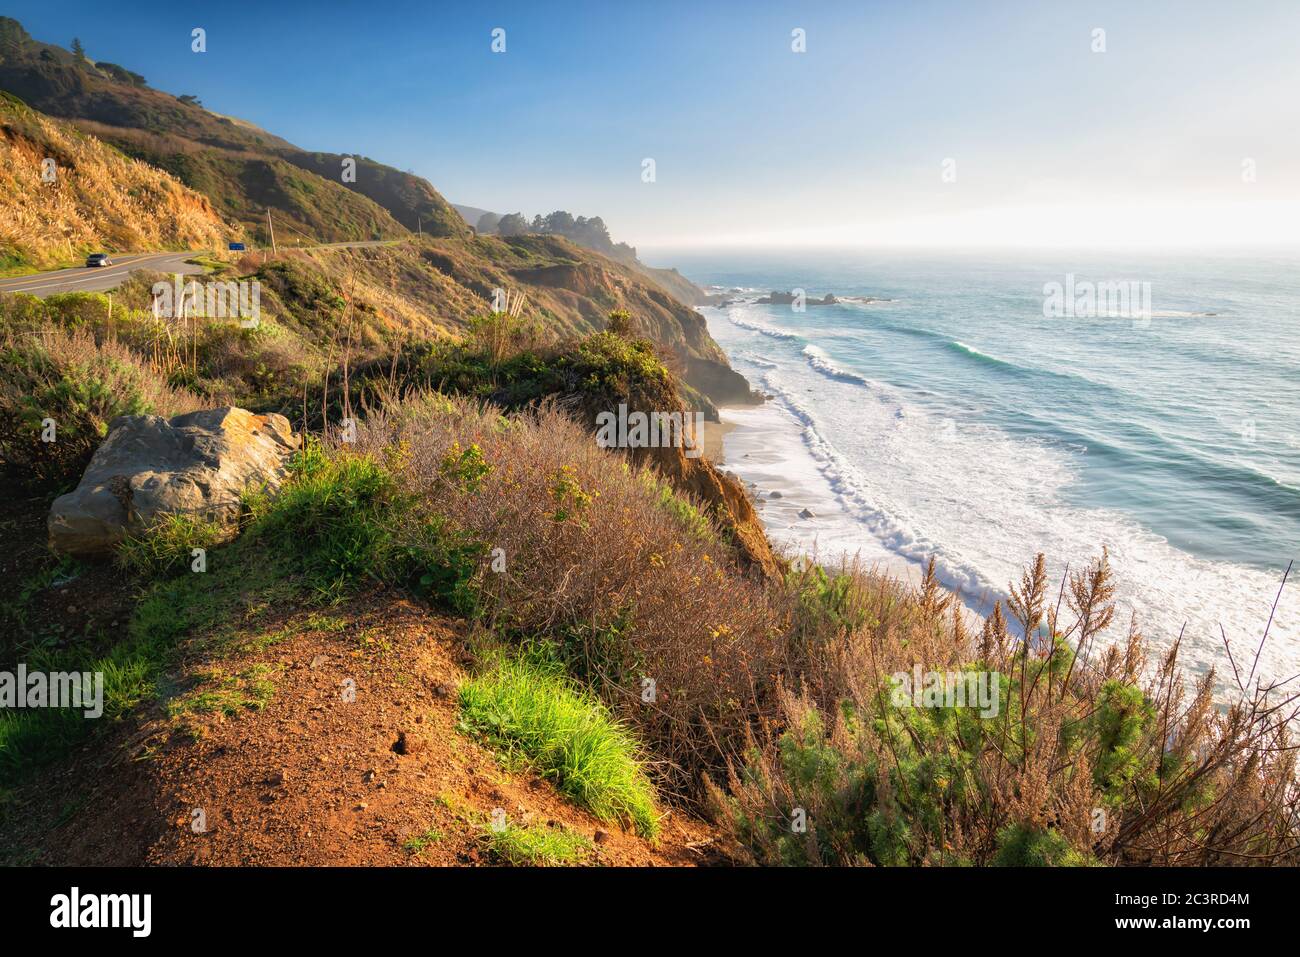 Percorsi panoramici attraverso la contea di Monterey. Big sur, state Route 1, California Coast Foto Stock